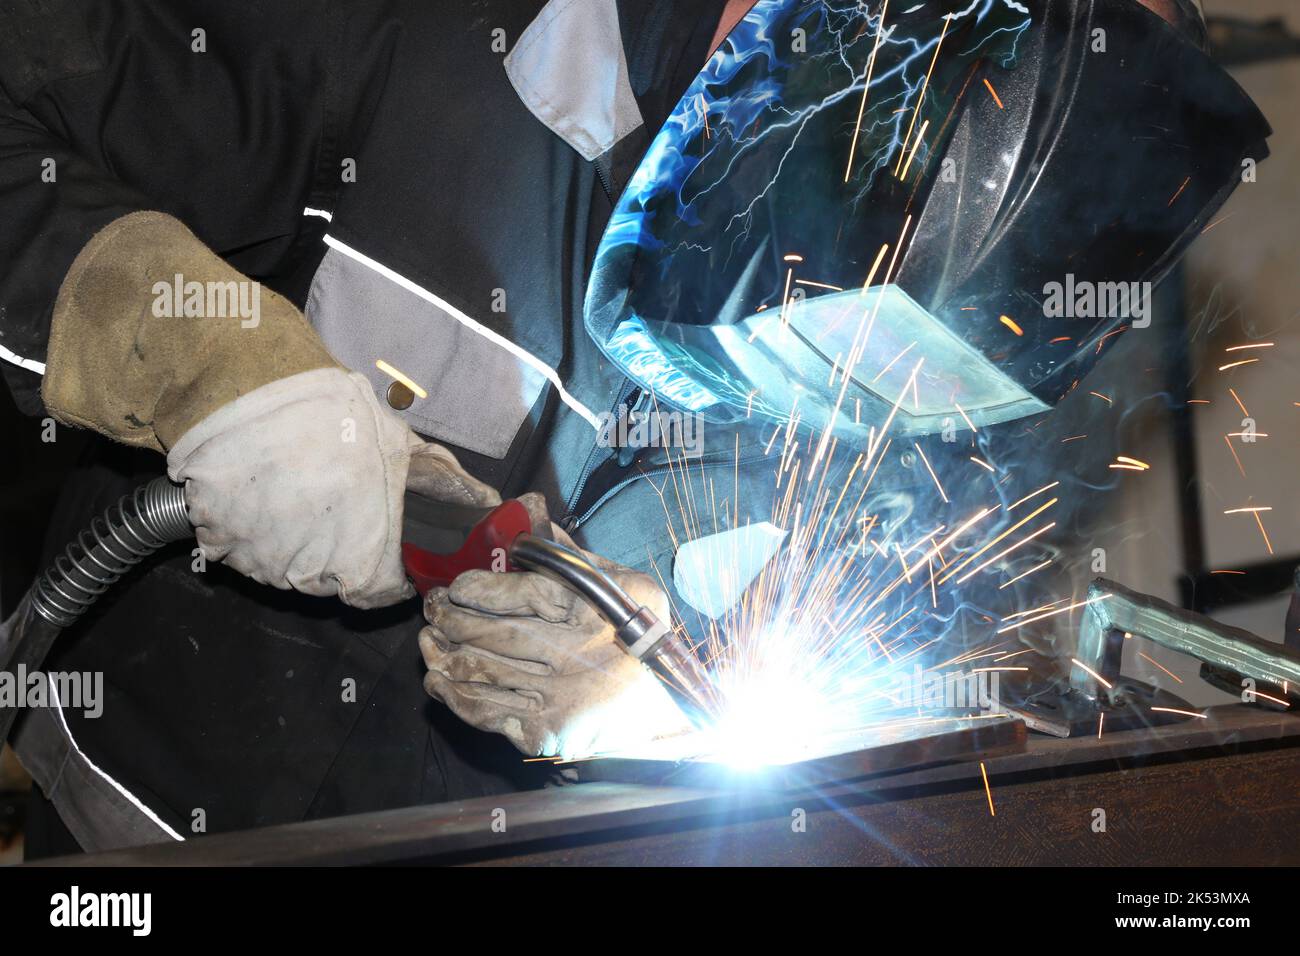 Trabajador de metal haciendo trabajos de soldadura en su taller Foto de stock